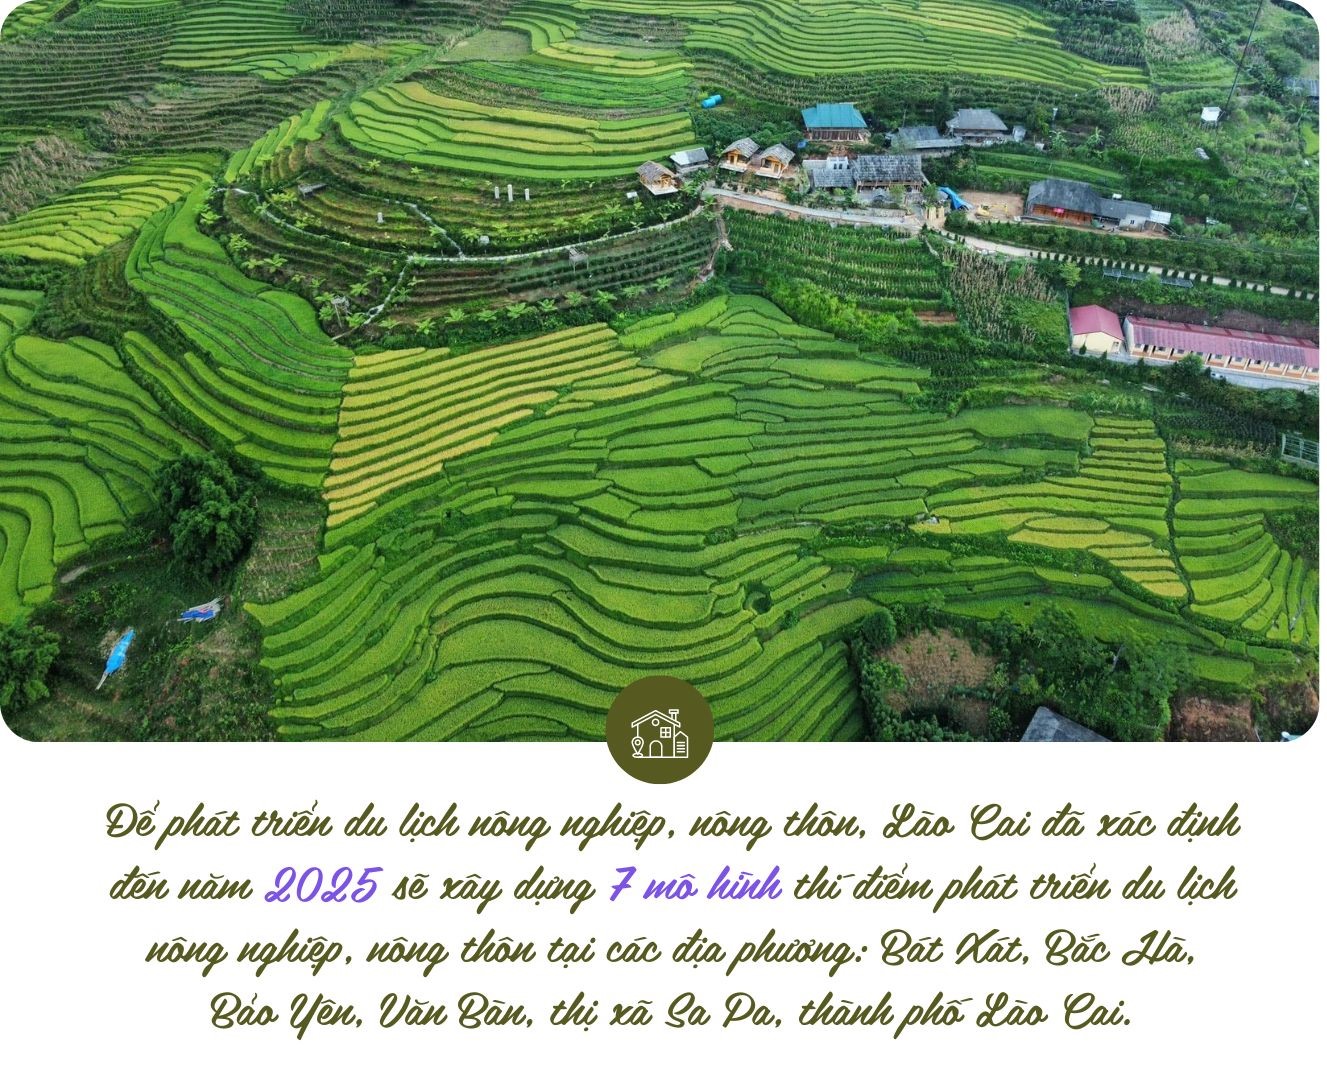 Triển vọng du lịch kết hợp với nông nghiệp ở Lào Cai.jpg